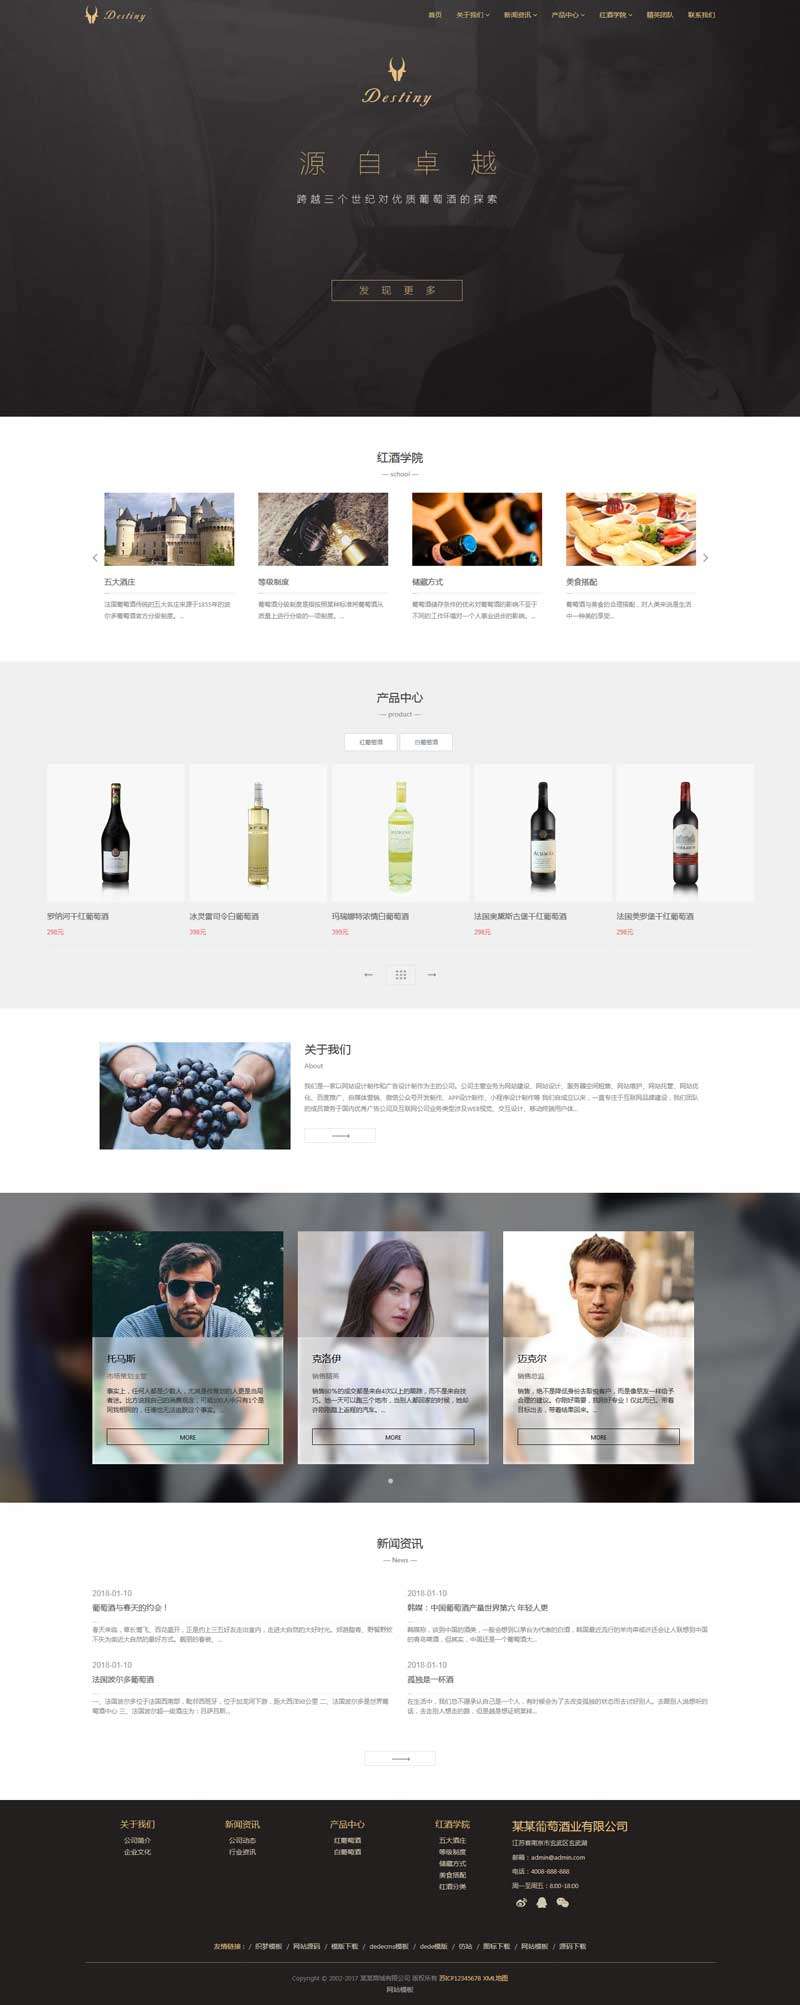 葡萄酒业贸易公司网站WordPress模板主题演示图